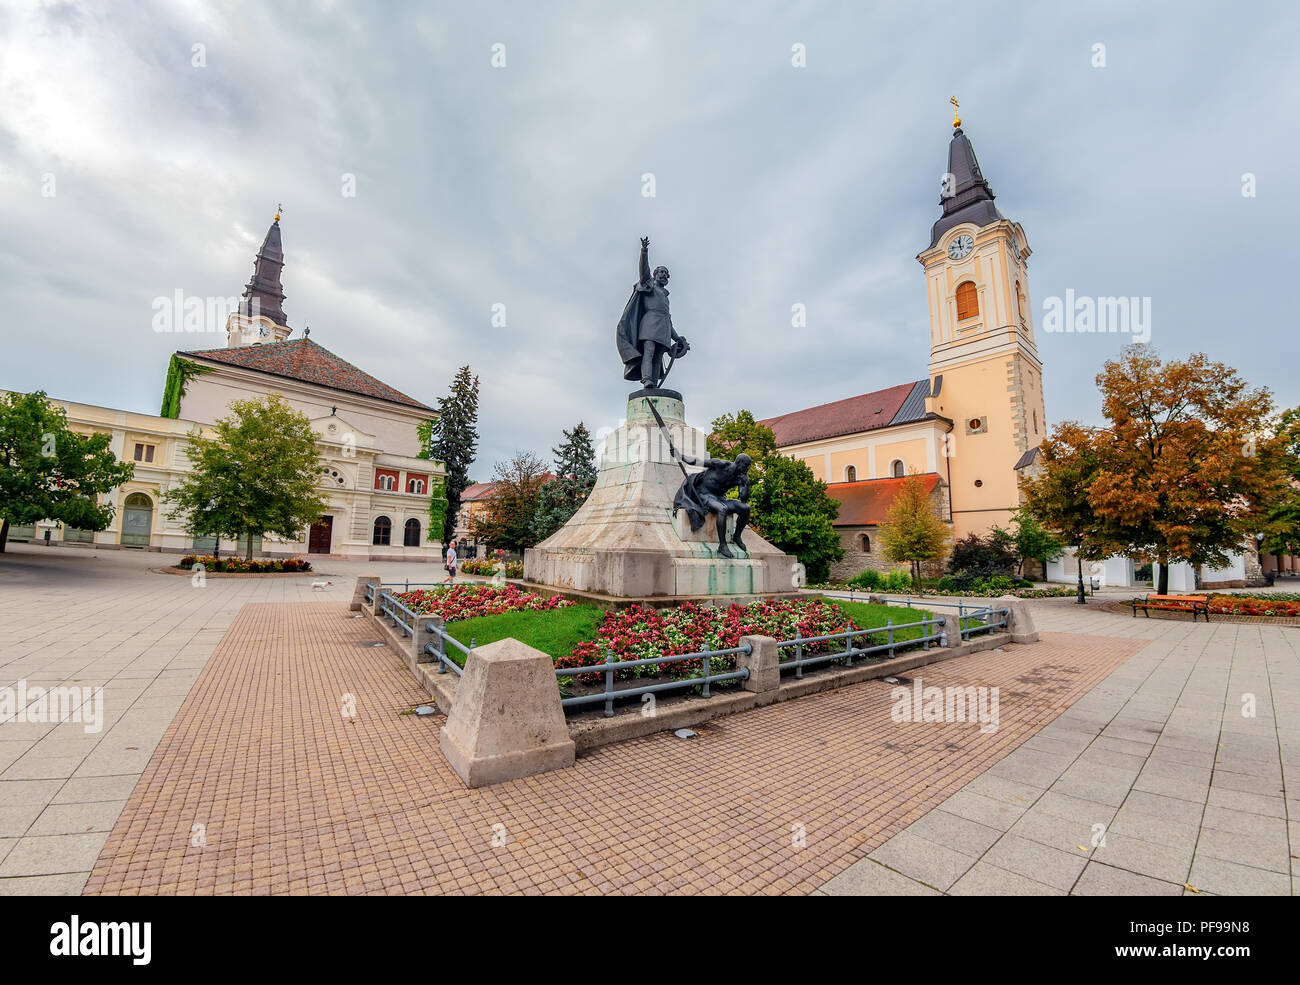 Le point de vue de la Place Kossuth à Kecskemet,avec la statue de Lajos Kossuth au milieu, entourée de l'Église réformée et le Grand Temple. Banque D'Images